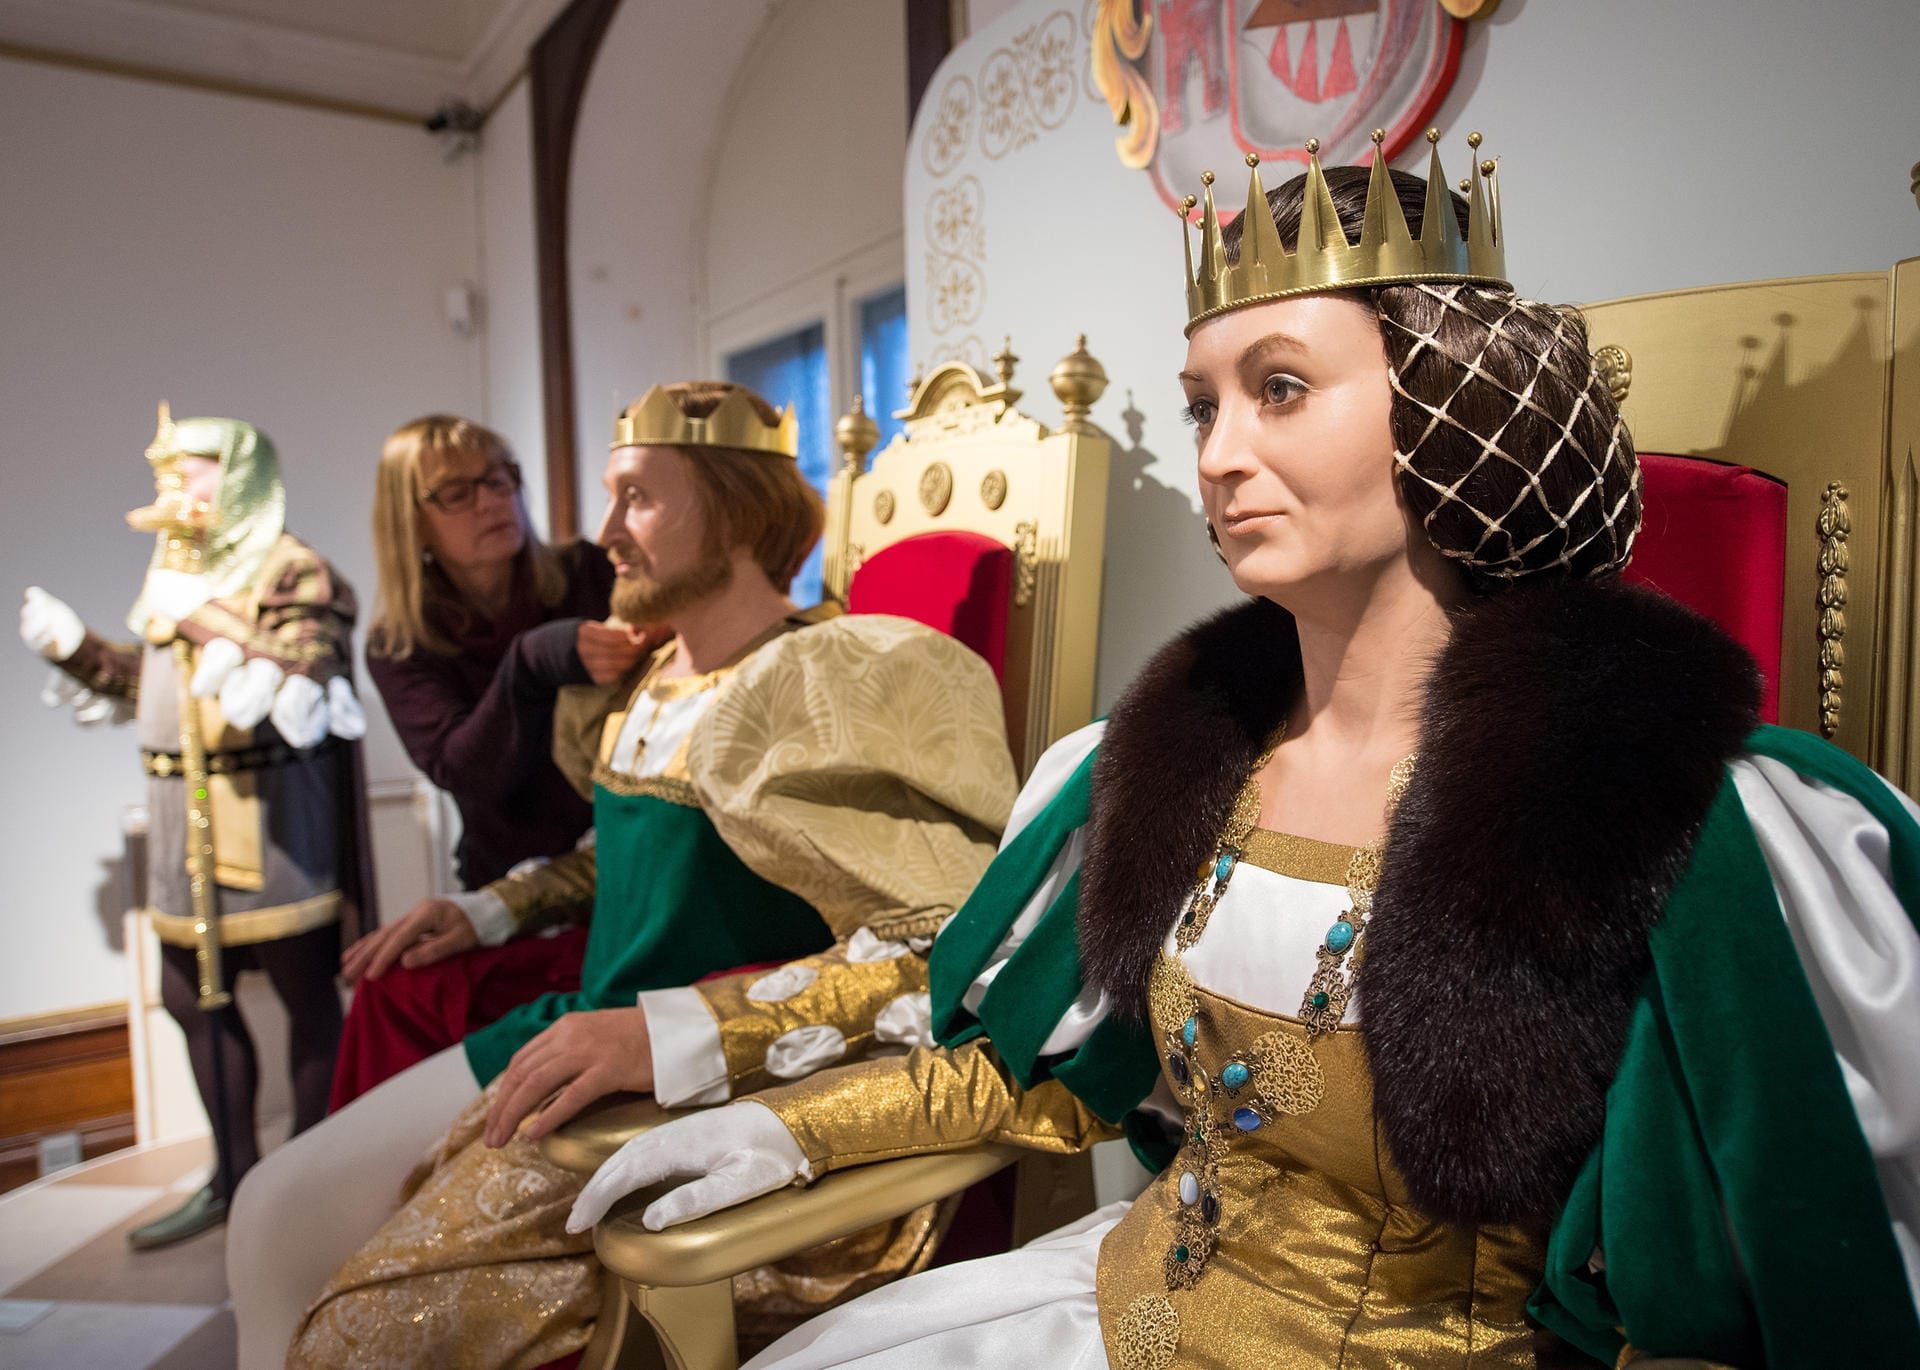 Das Königspaar sitzt auf dem Thron: Museumspädagogin Angelika Graf bei der Vorbereitung der Ausstellung "Drei Haselnüsse für Aschenbrödel" im Schloss Moritzburg.